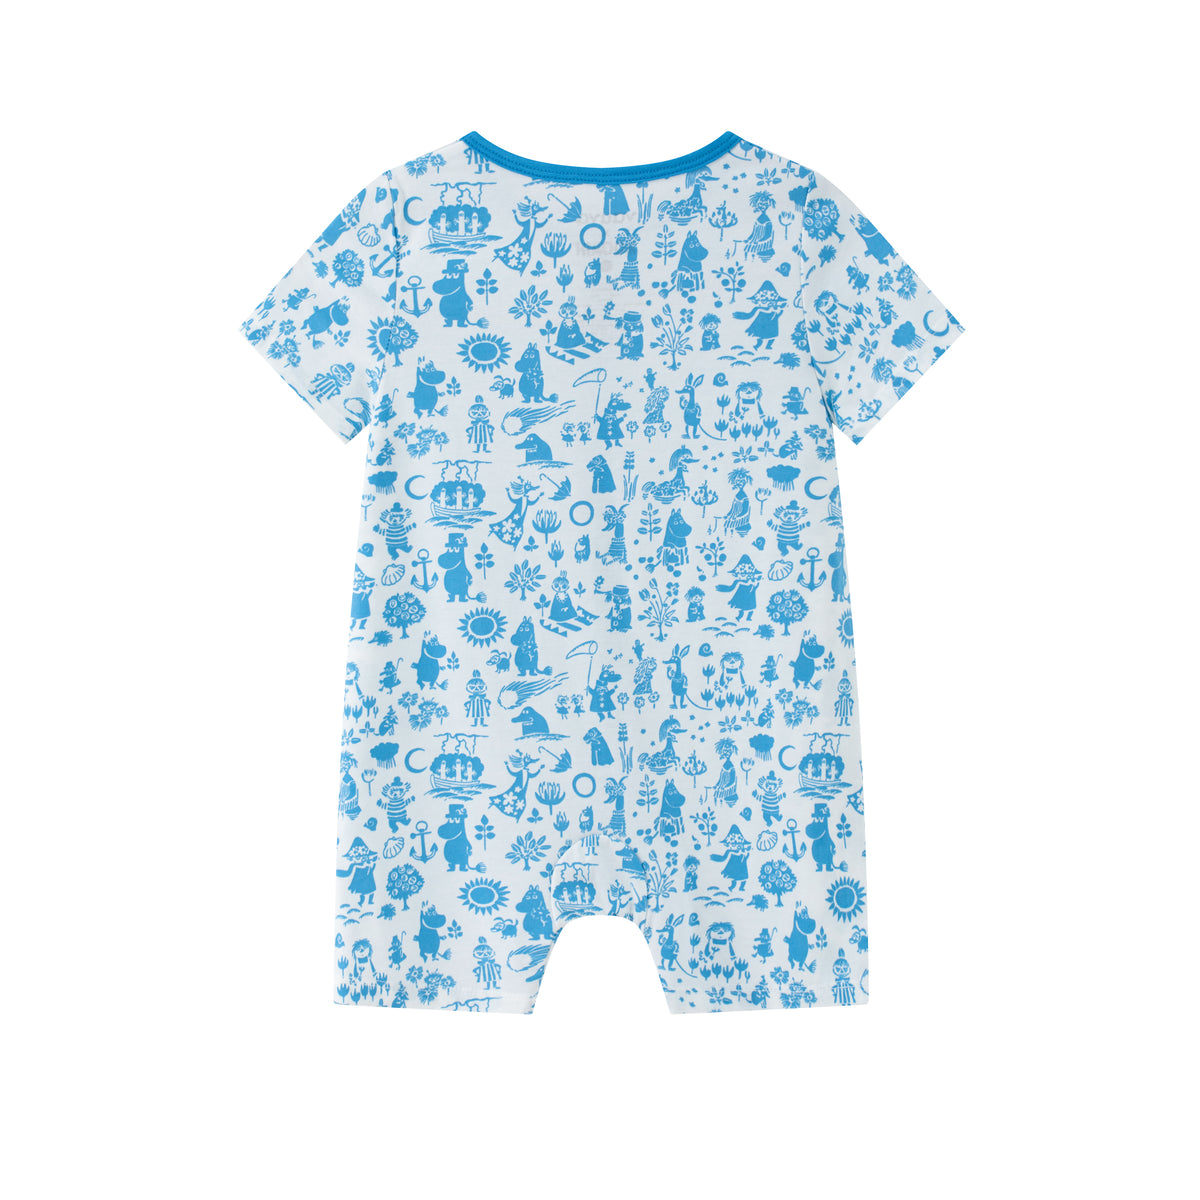 Vauva x Moomin - Baby Moomin Print Short Sleeve Romper (White)